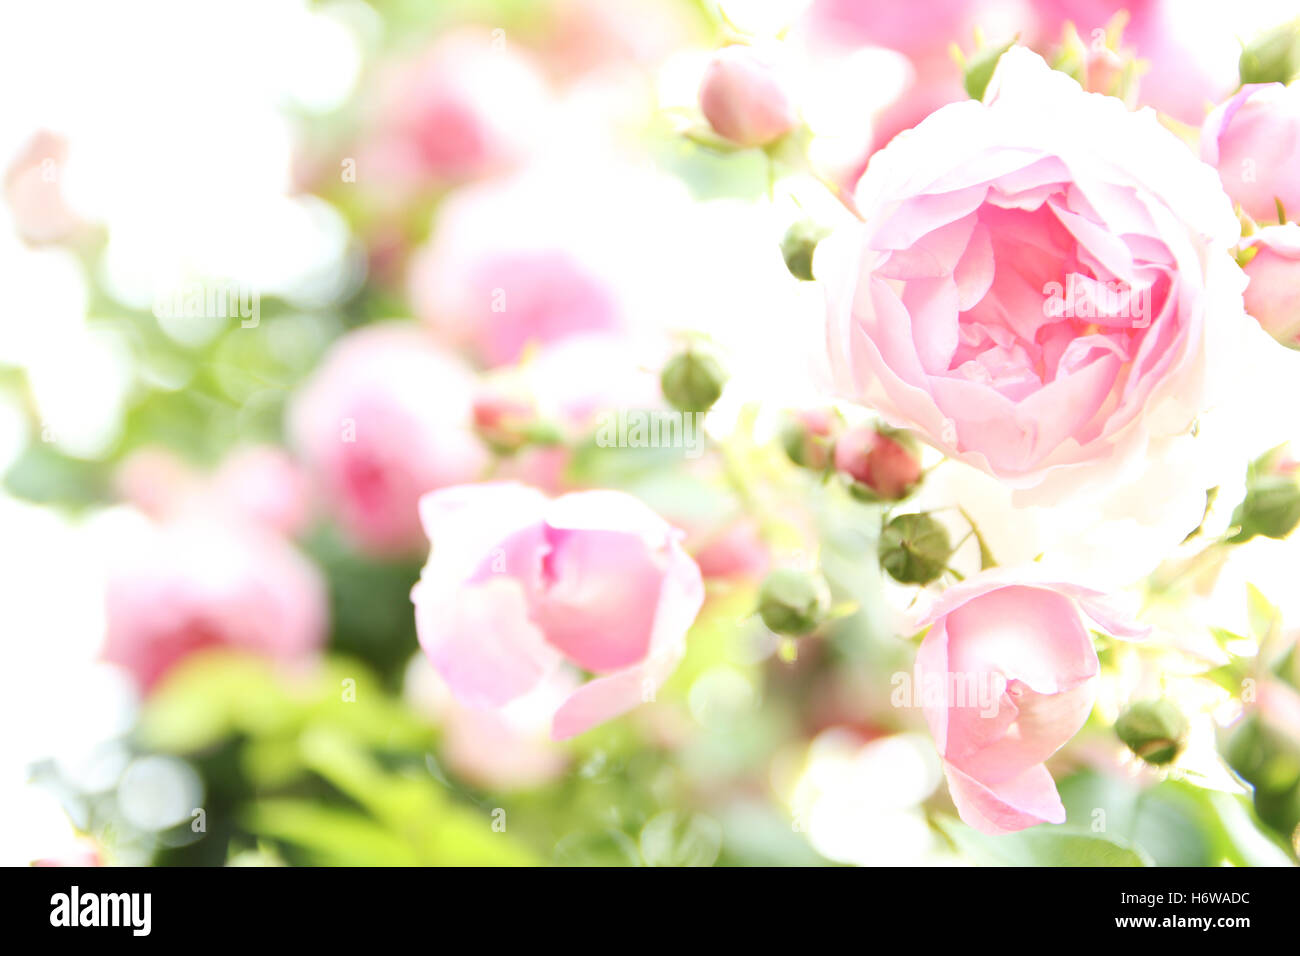 rose background Stock Photo